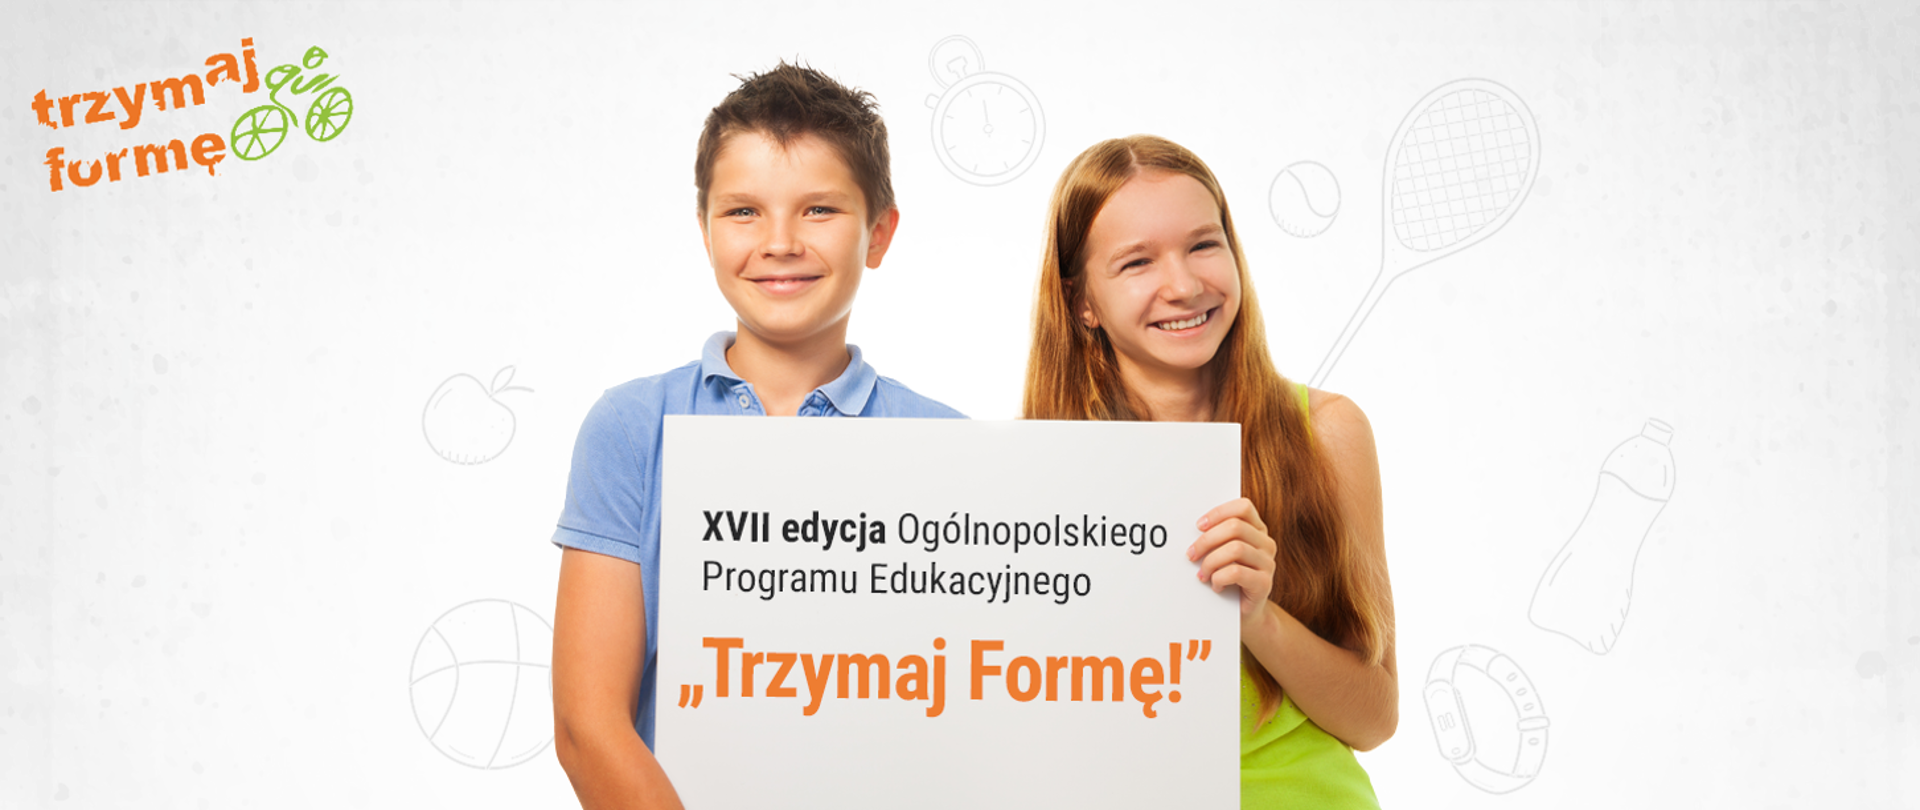 w lewym górnym rogu logo programu Trzymaj Formę z rowerem. Dzieci ( chłopiec i dziewczynka)trzymają tablicę z napisem:XVII edycja Ogólnopolskiego Programu Edukacyjnego Trzymaj Formę